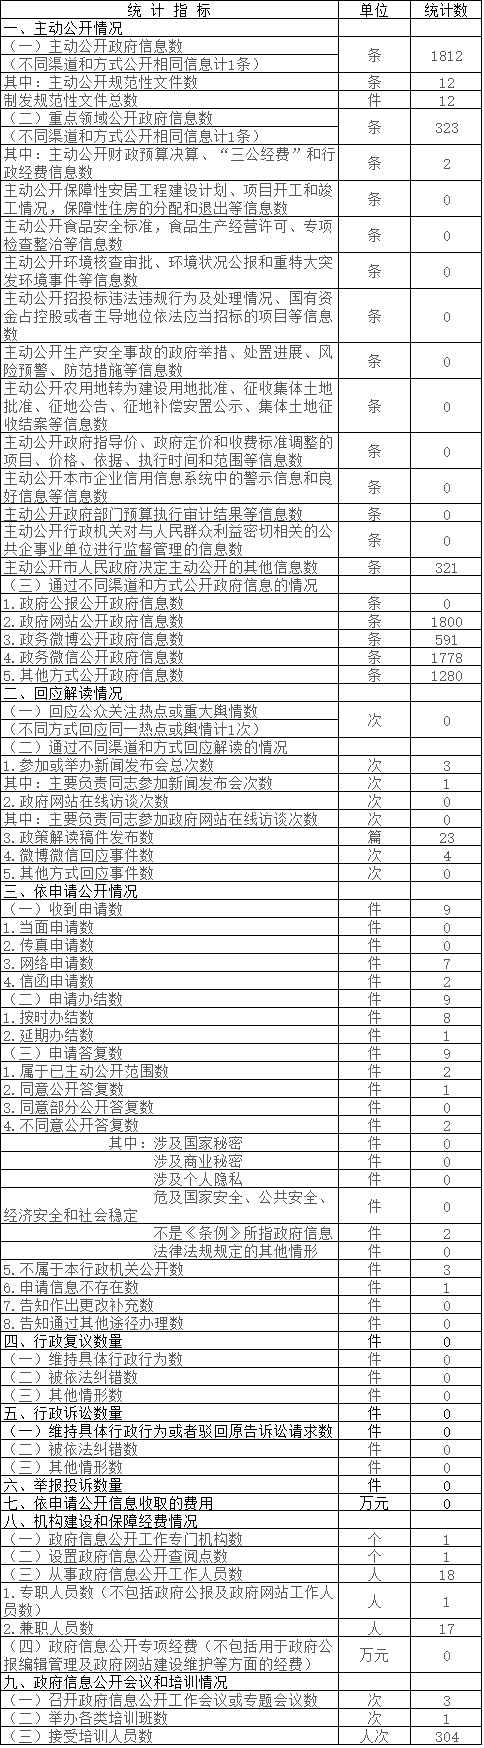 中关村管委会政府信息公开情况统计表(2017年度)